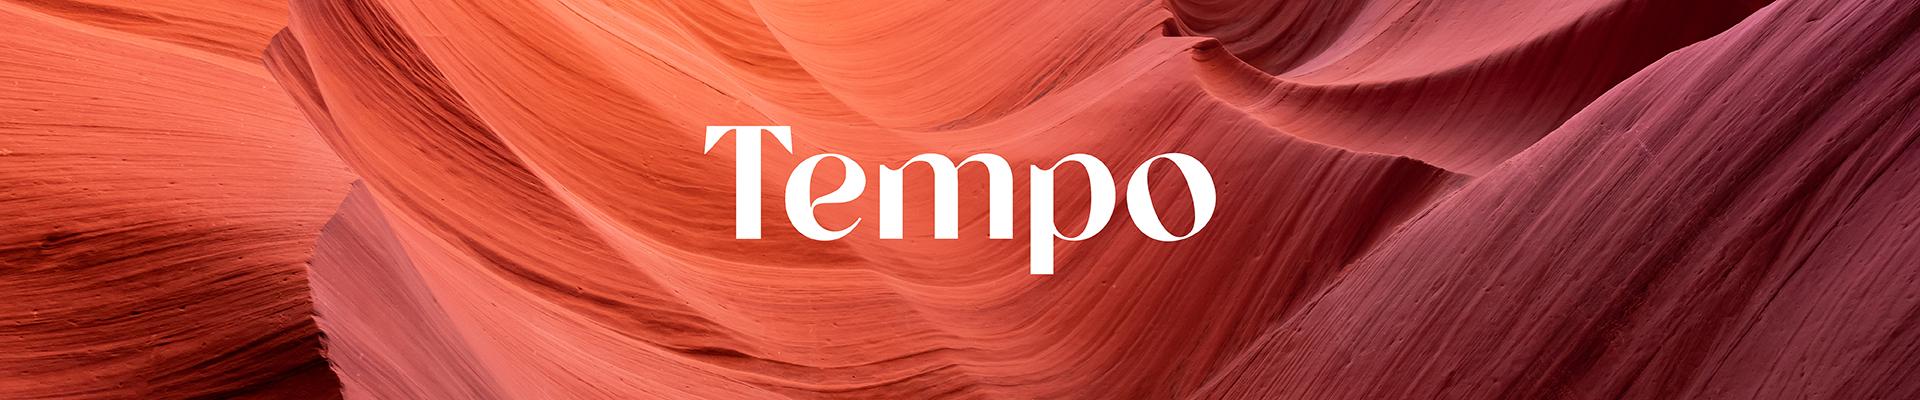 Tempo By Clayton Hermiston